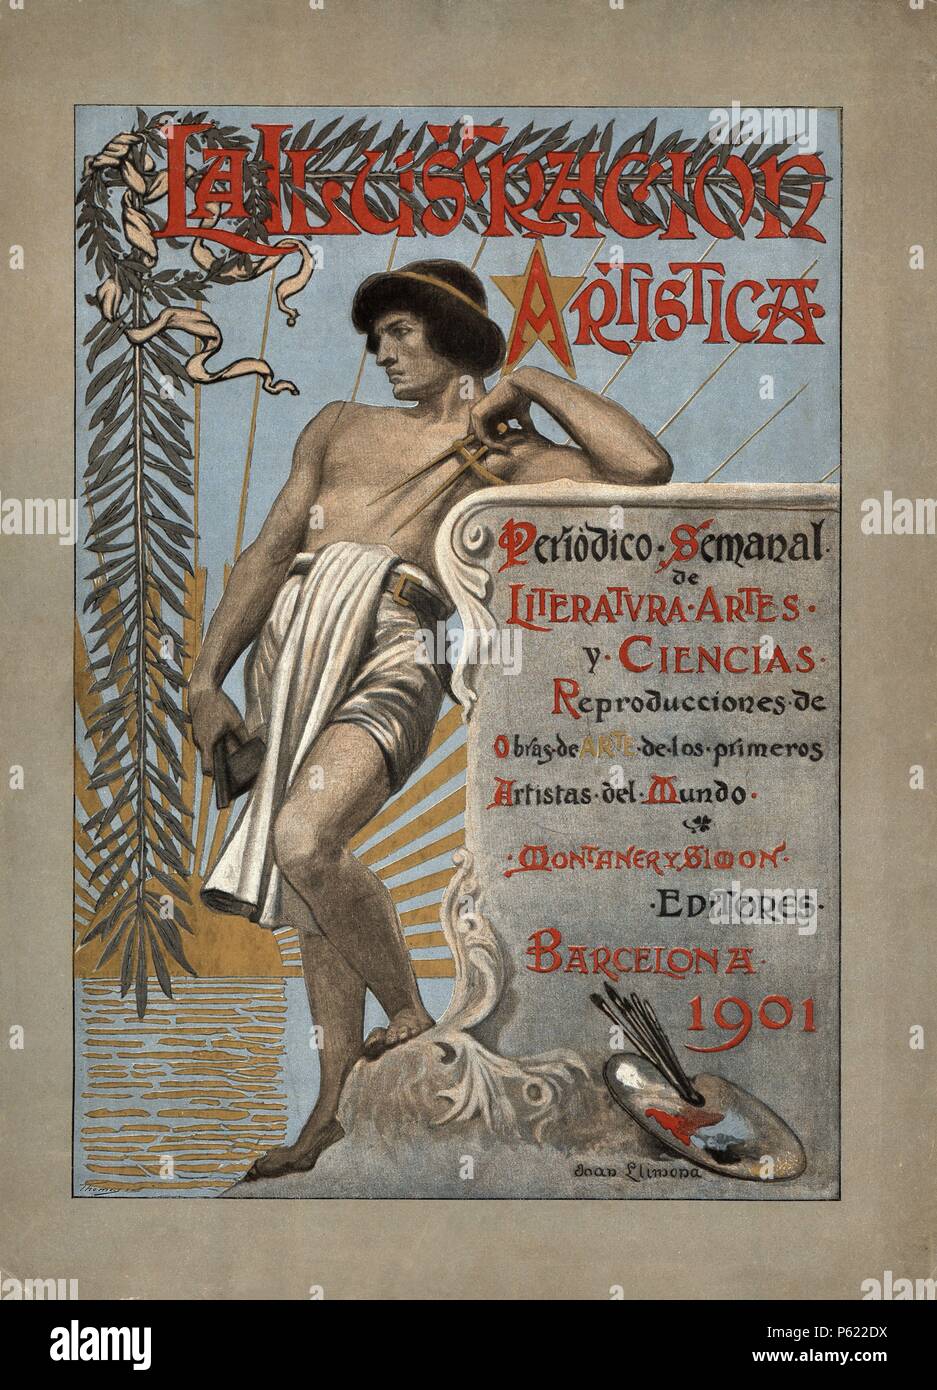 Portada de la revista modernista la Ilustración Artística. Dibujos de Joan Llimona. Barcellona, 1901. Foto Stock